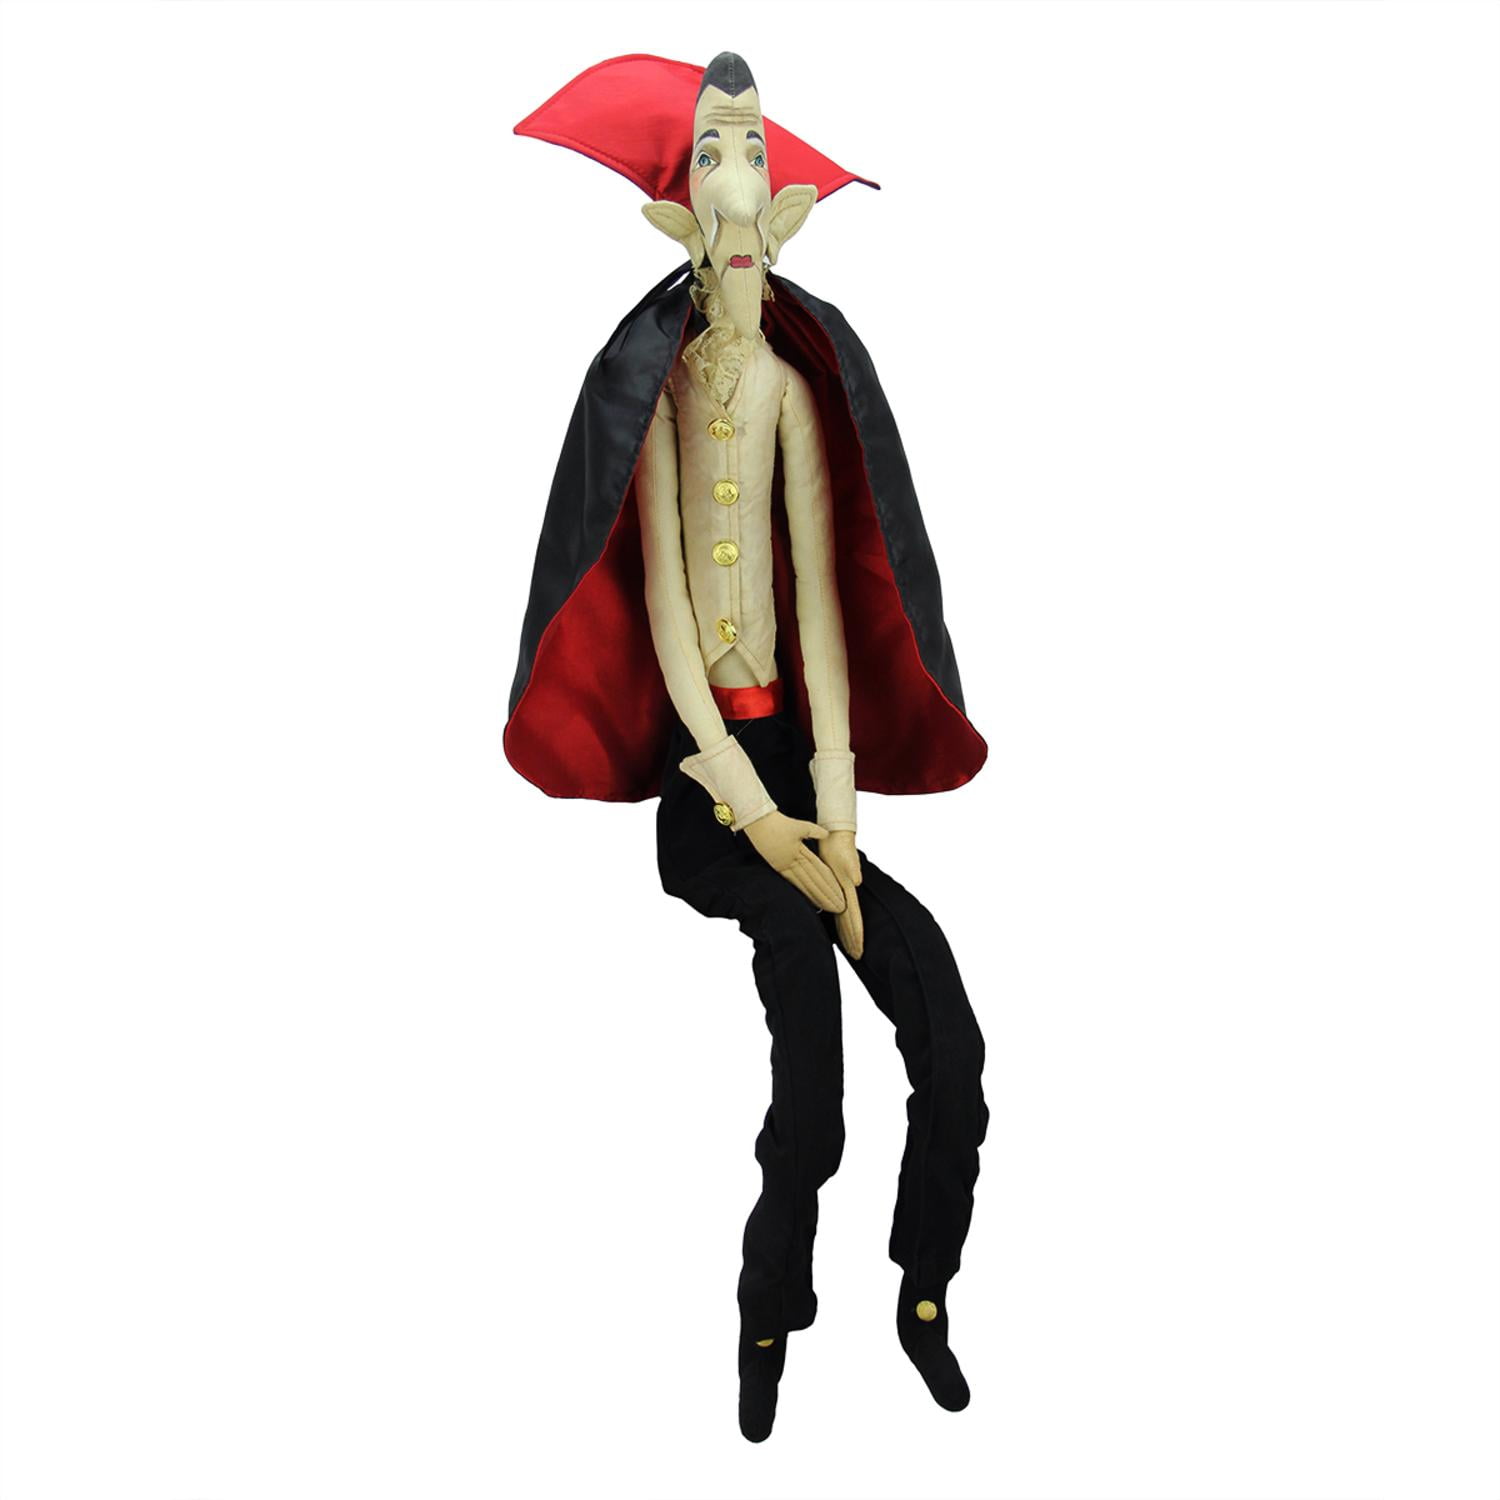 Spun Cotton Vintage Style Halloween Vampire Boy Figure